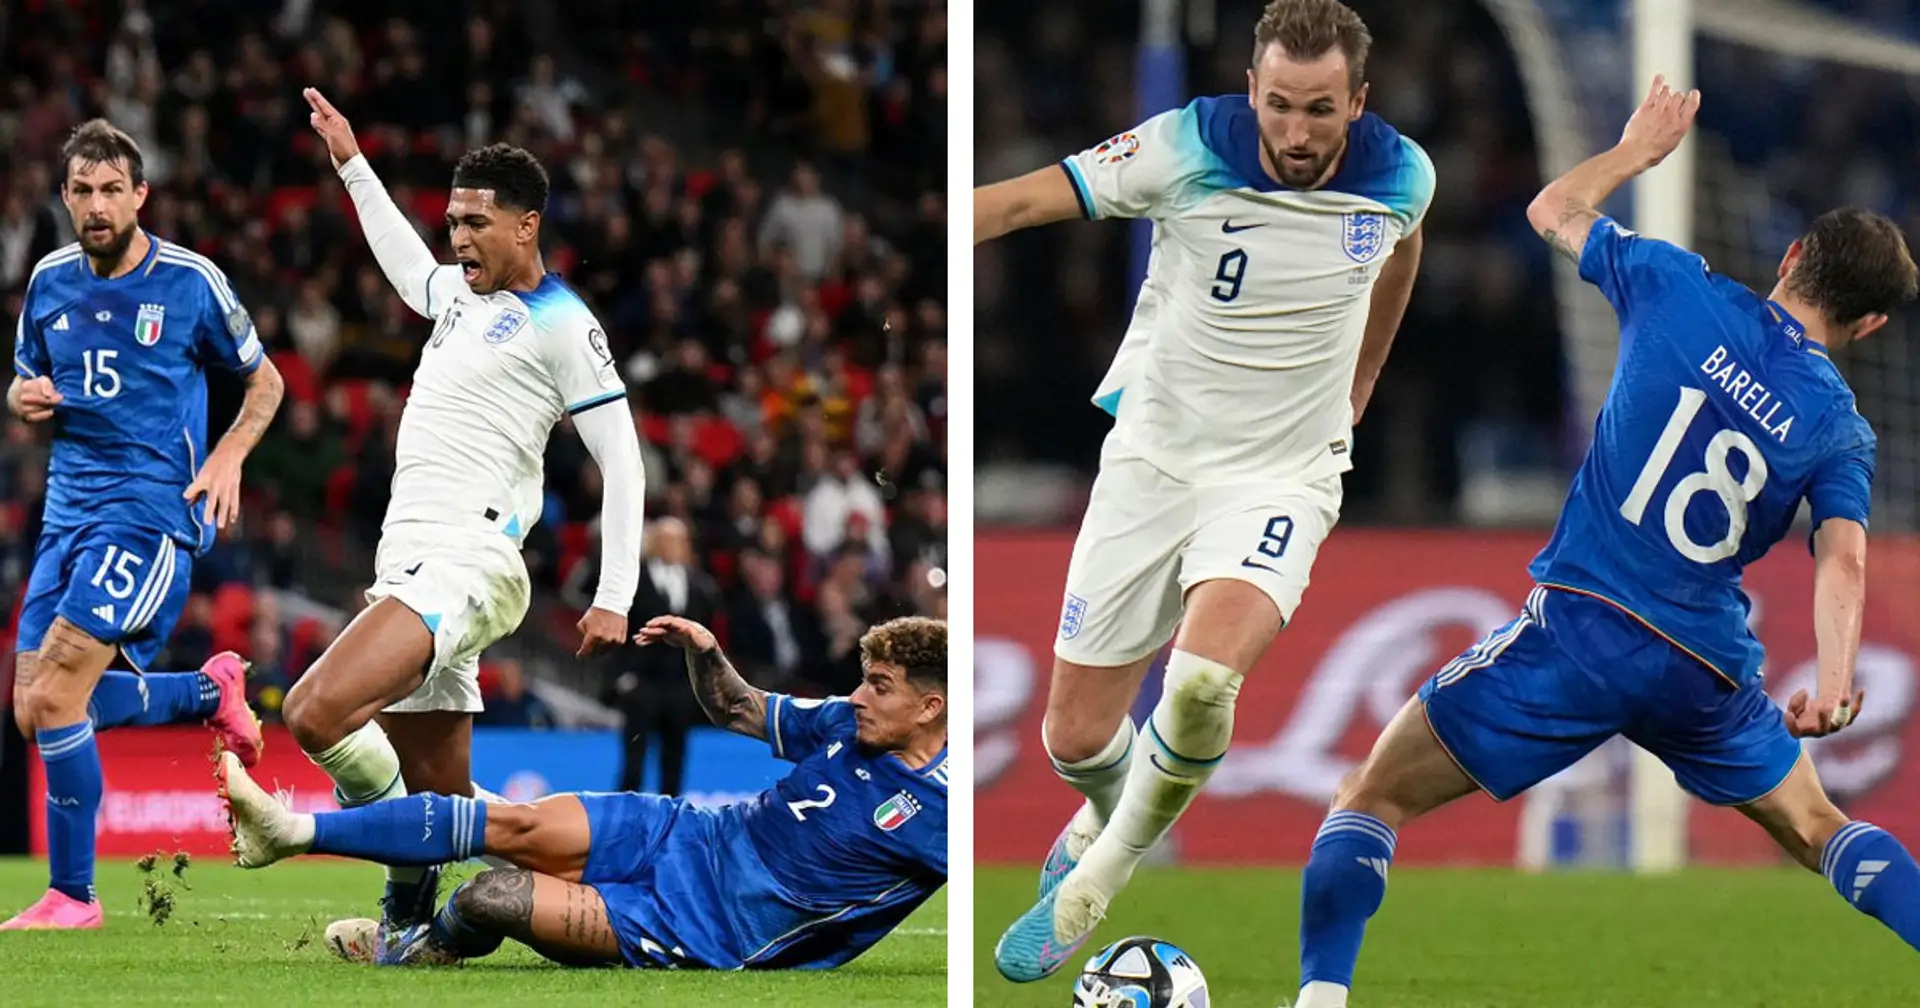 L'Italia perde 3-1 contro l'Inghilterra a Wembley: la qualificazione agli Europei è a rischio